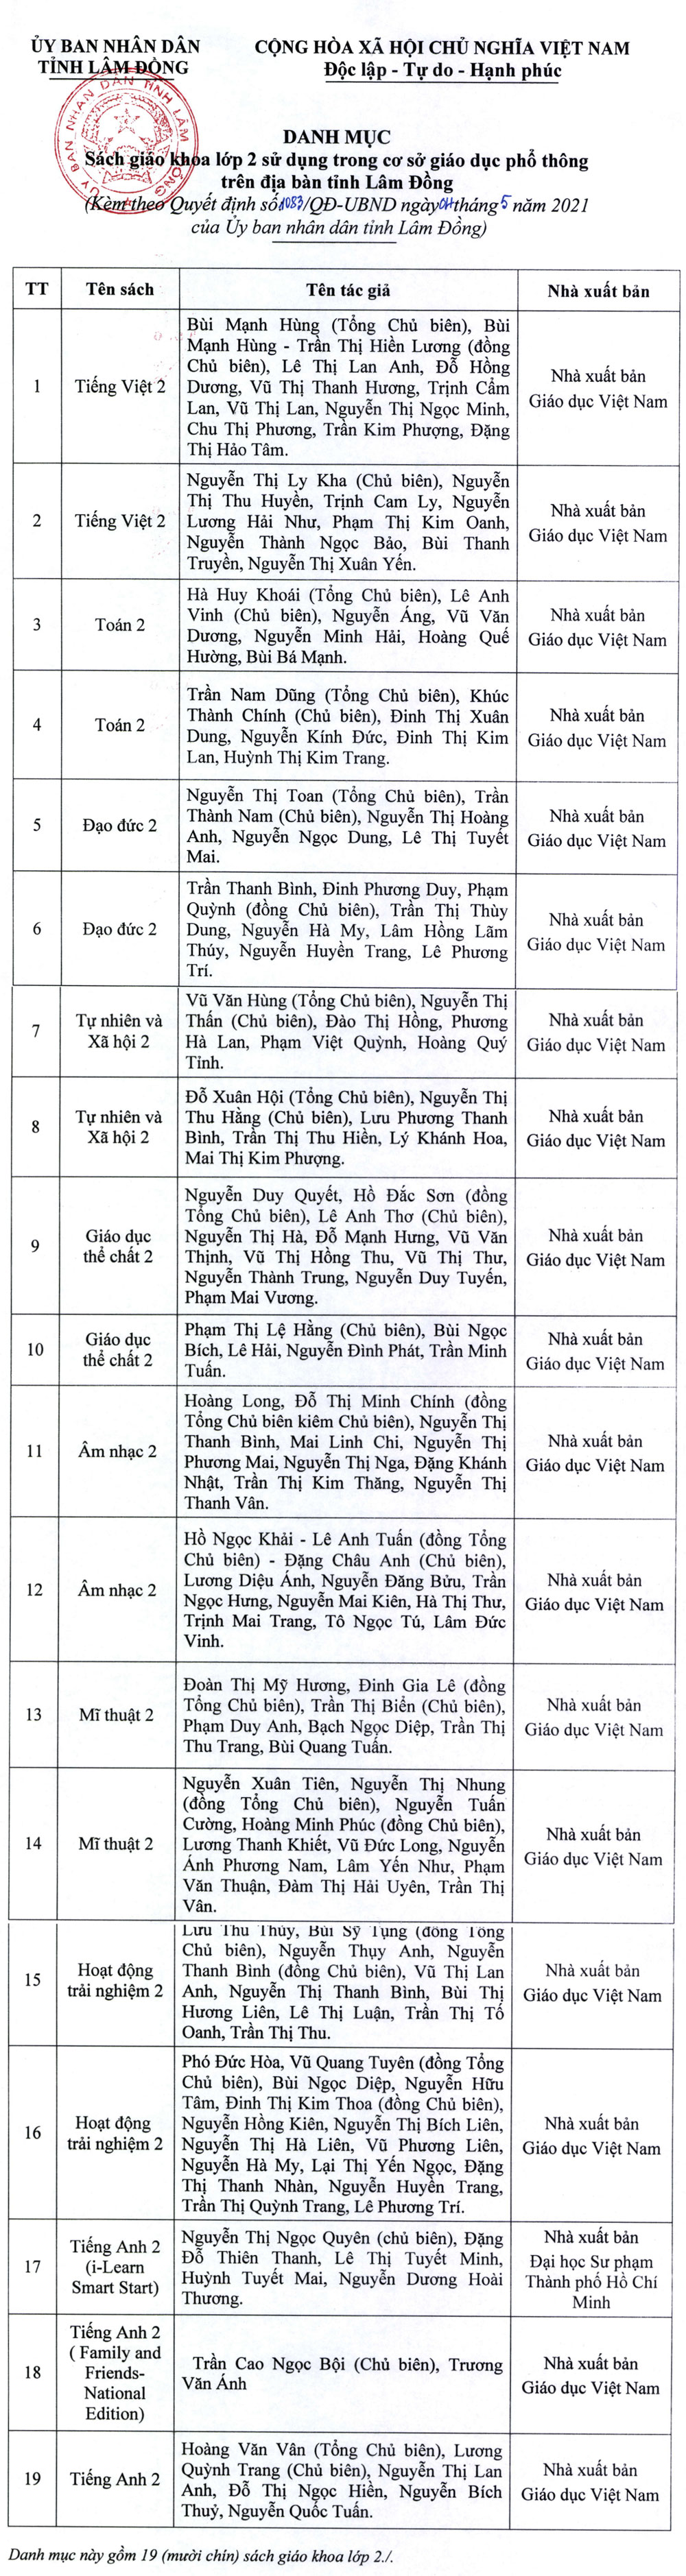 Công bố danh mục sách giáo khoa lớp 2, lớp 6 sử dụng năm học mới tại Lâm Đồng